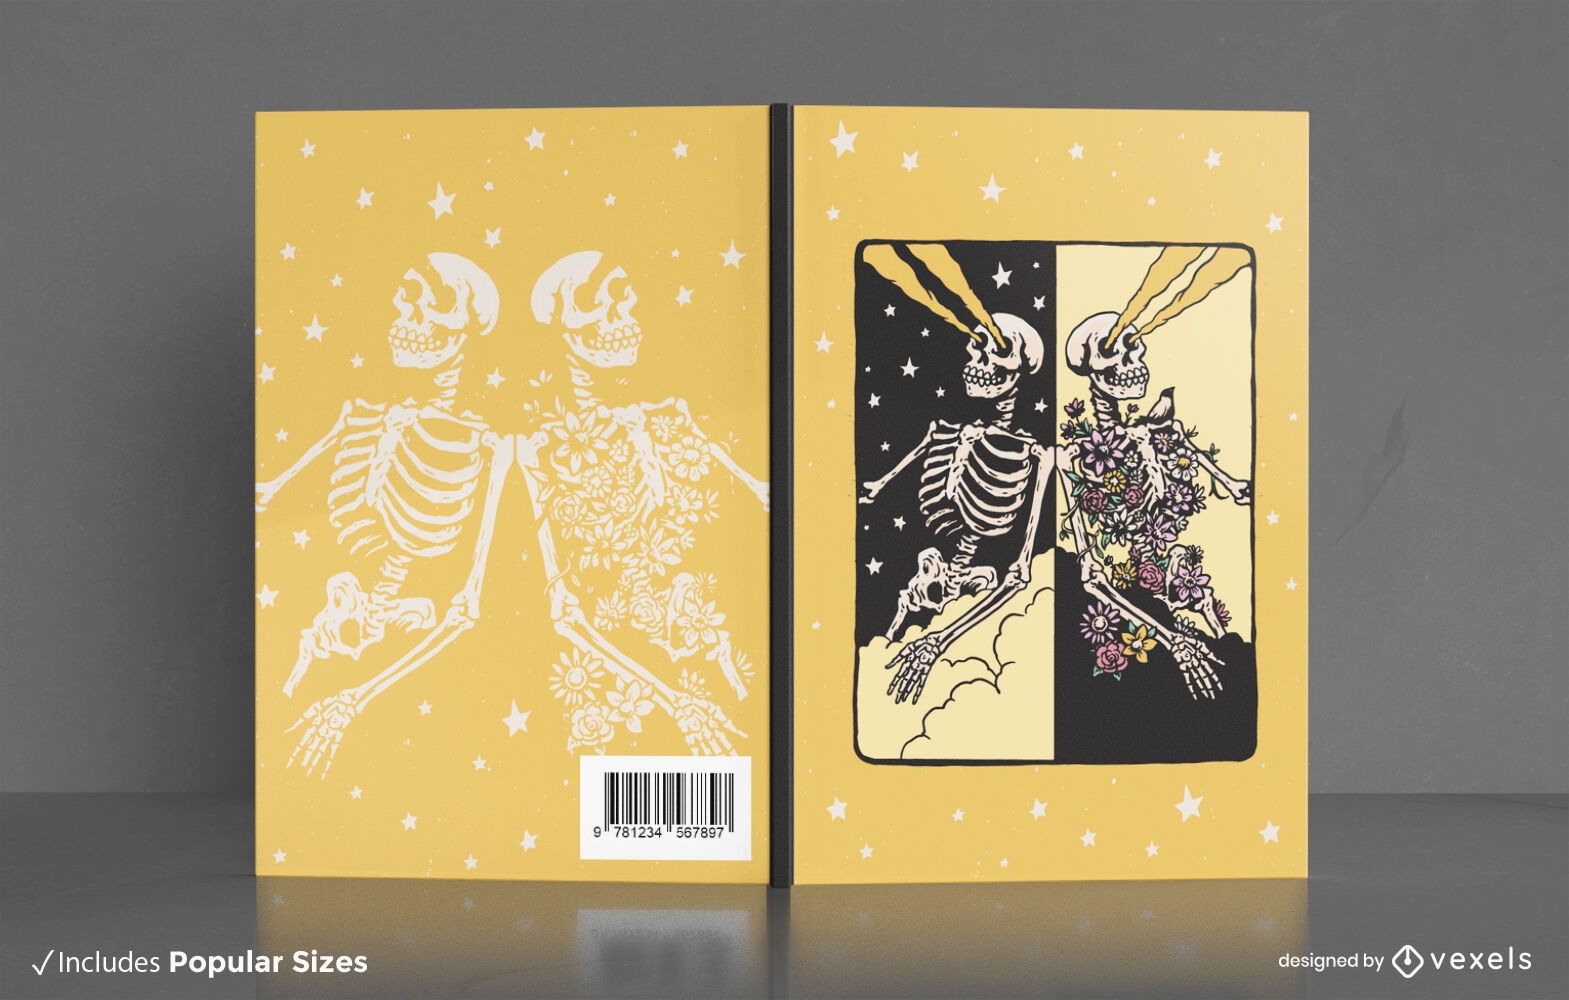 Multiverse skeletons book cover design